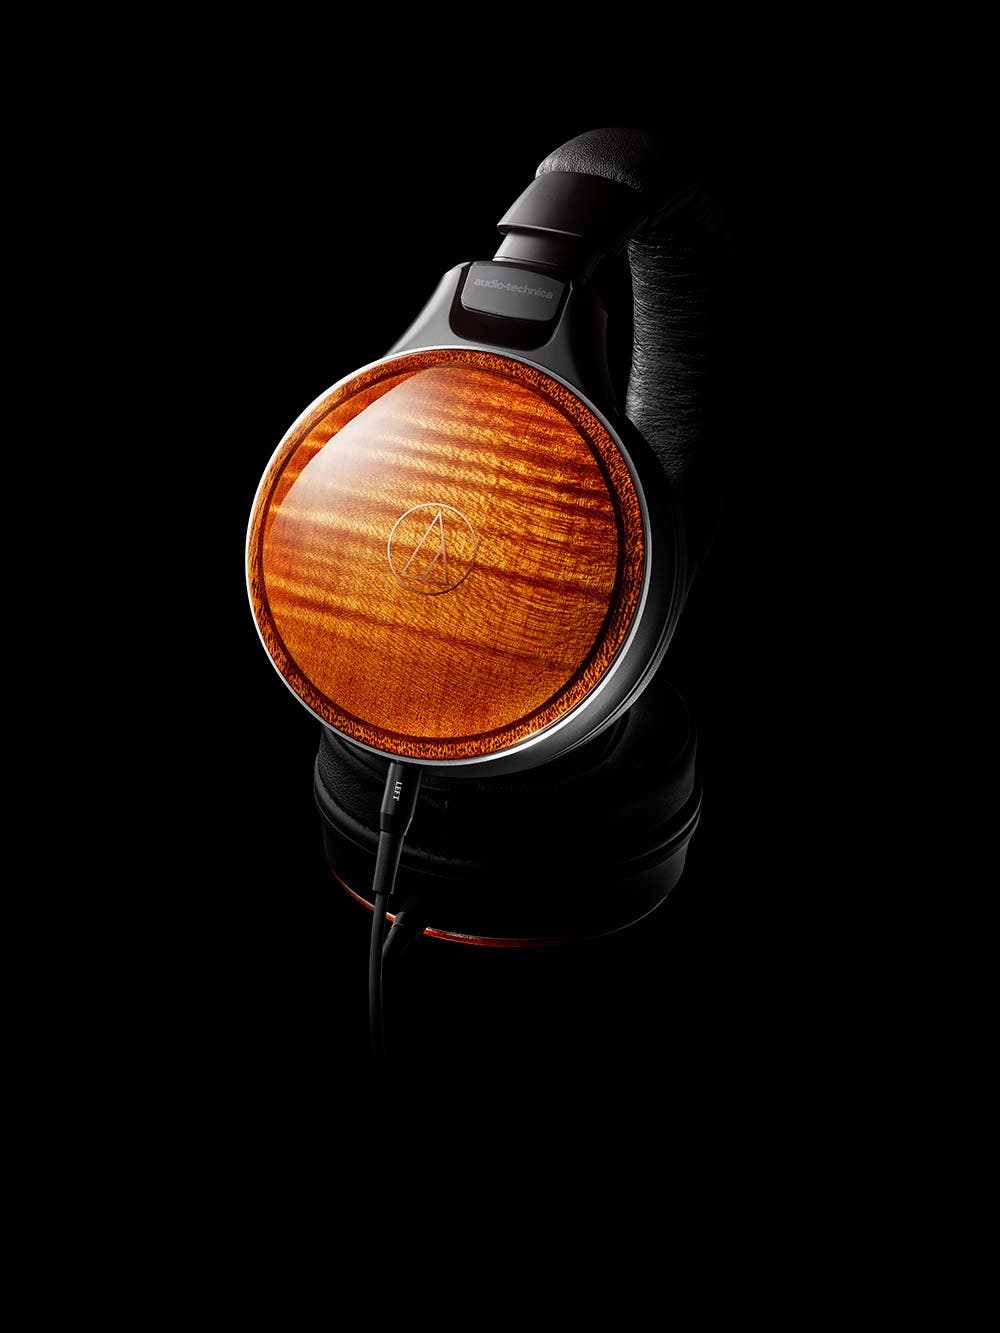 Audio-Technica präsentiert Limited-Edition-Version seiner Kopfhörer-Ikone mit Holzgehäusen und herausragend klarem, analogem Klang